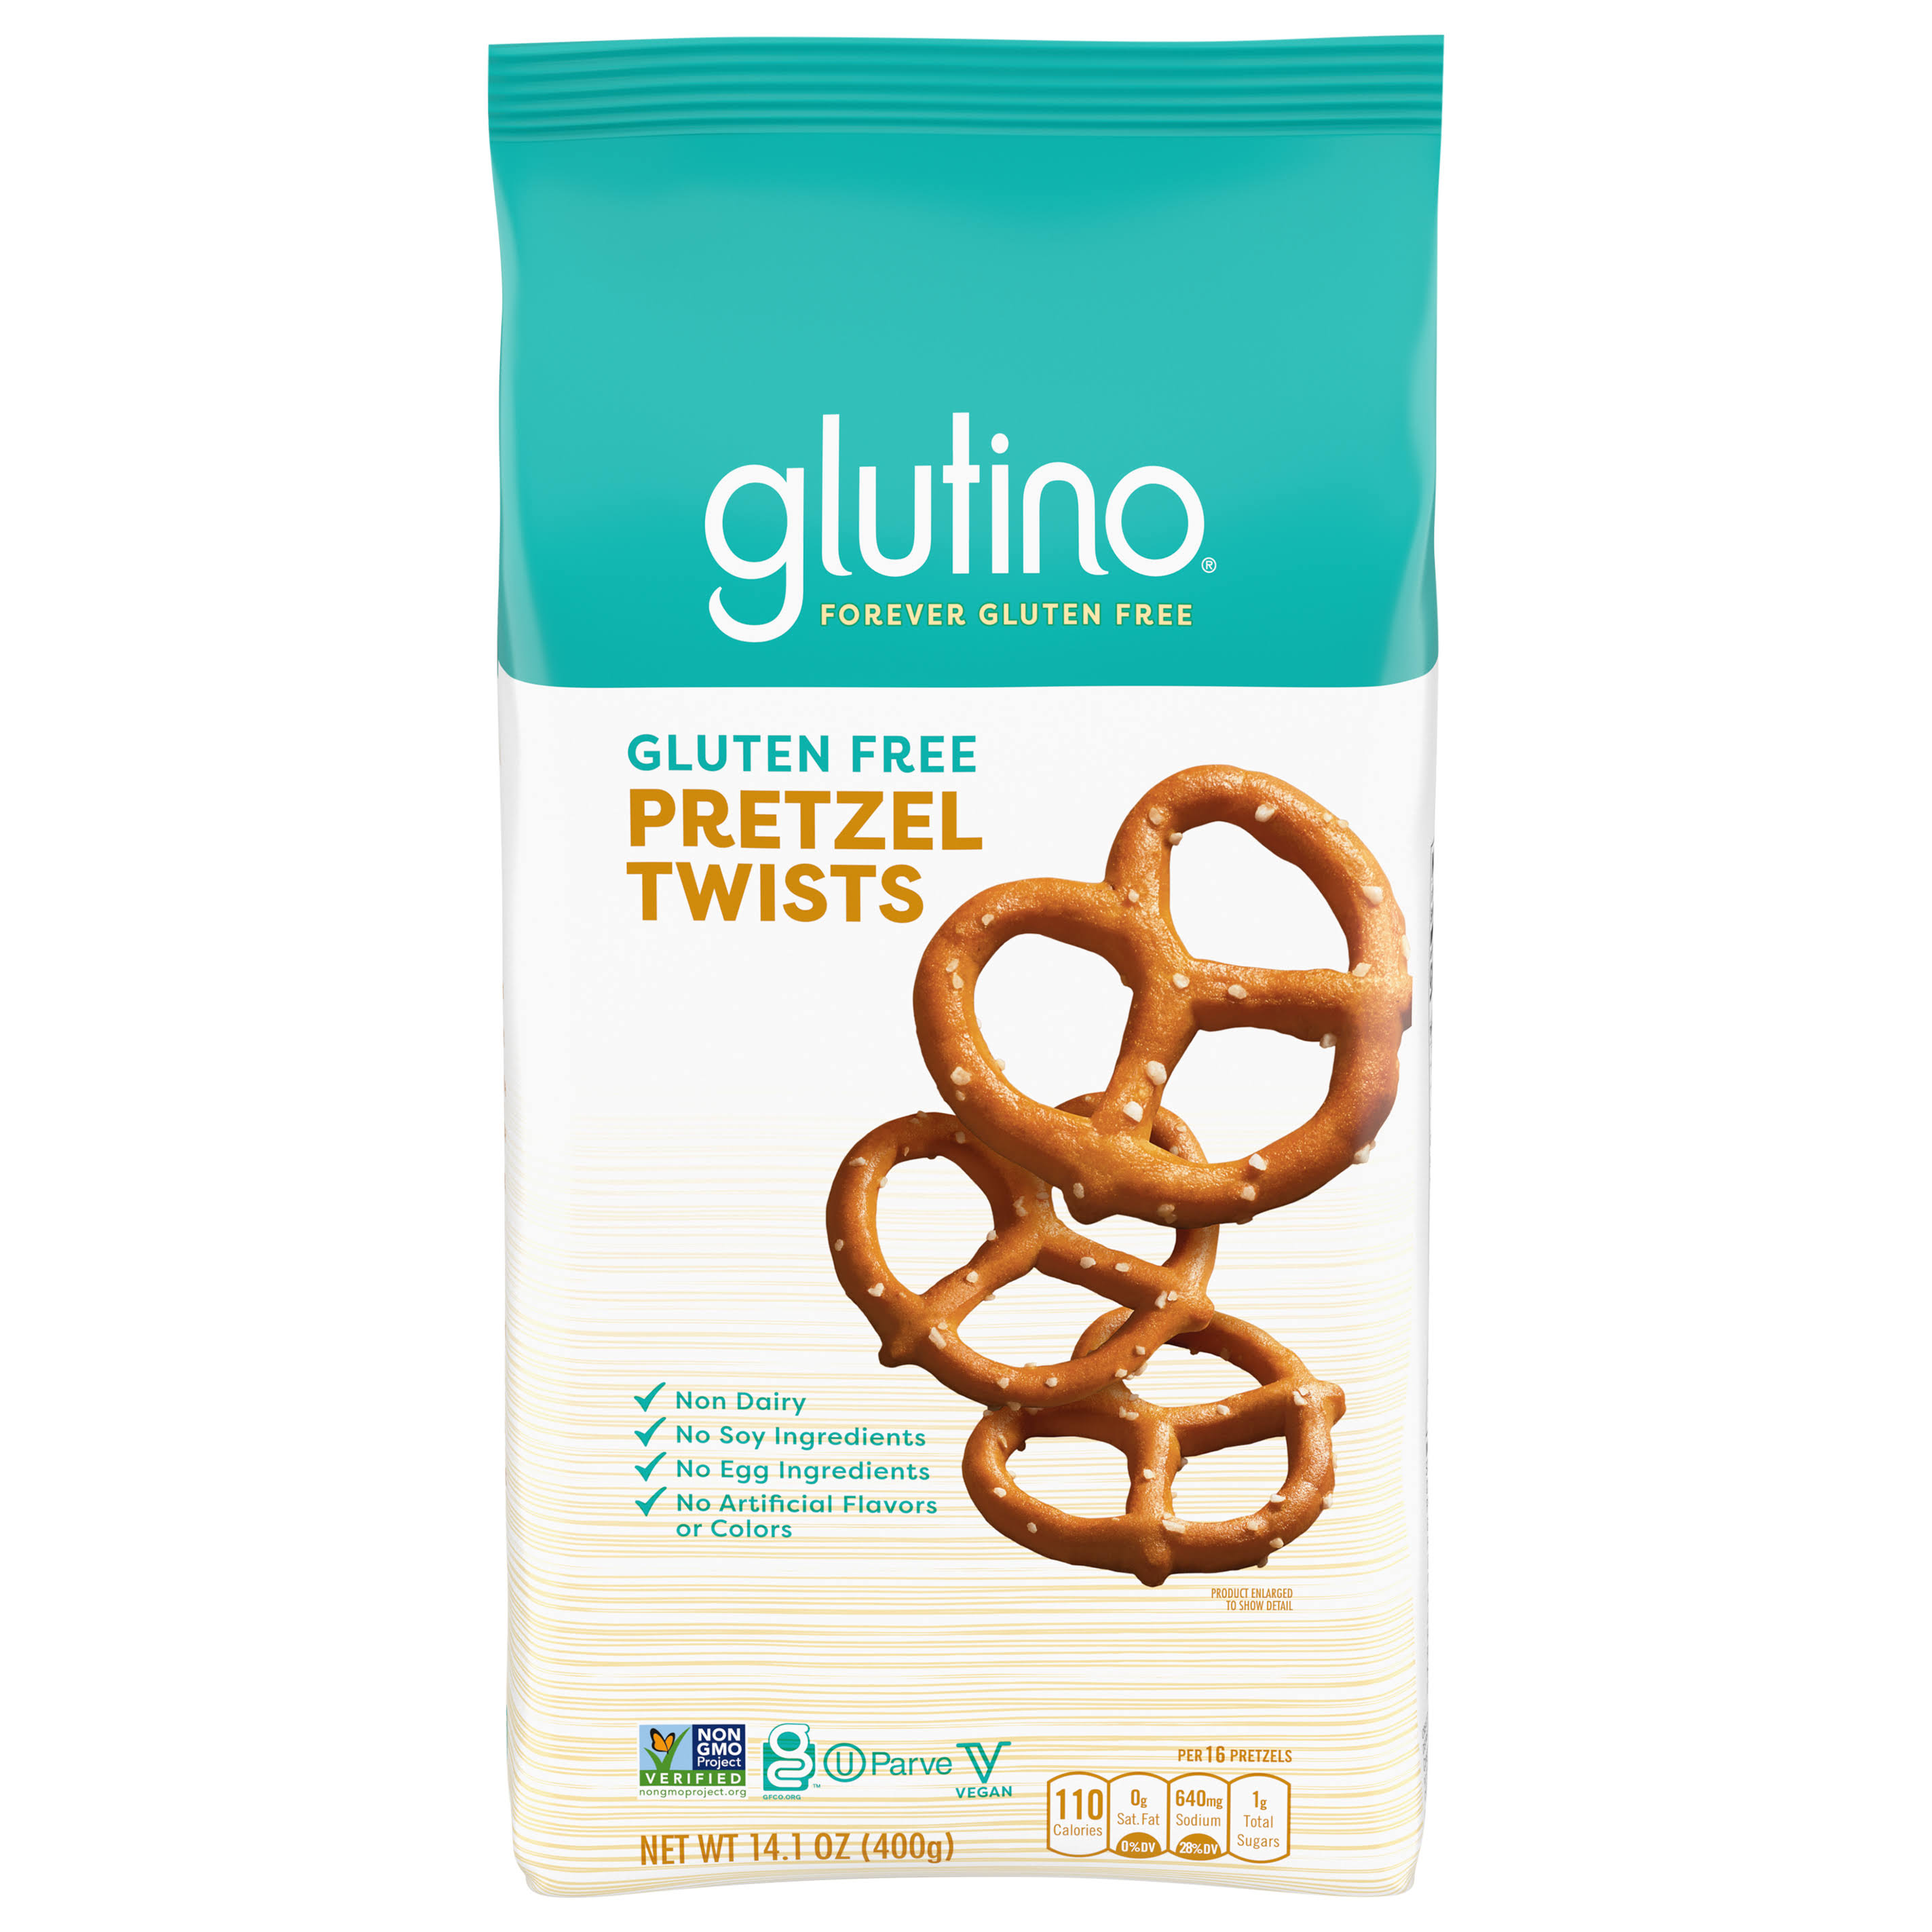 Glutino Gluten Free Pretzel Twists - 400g